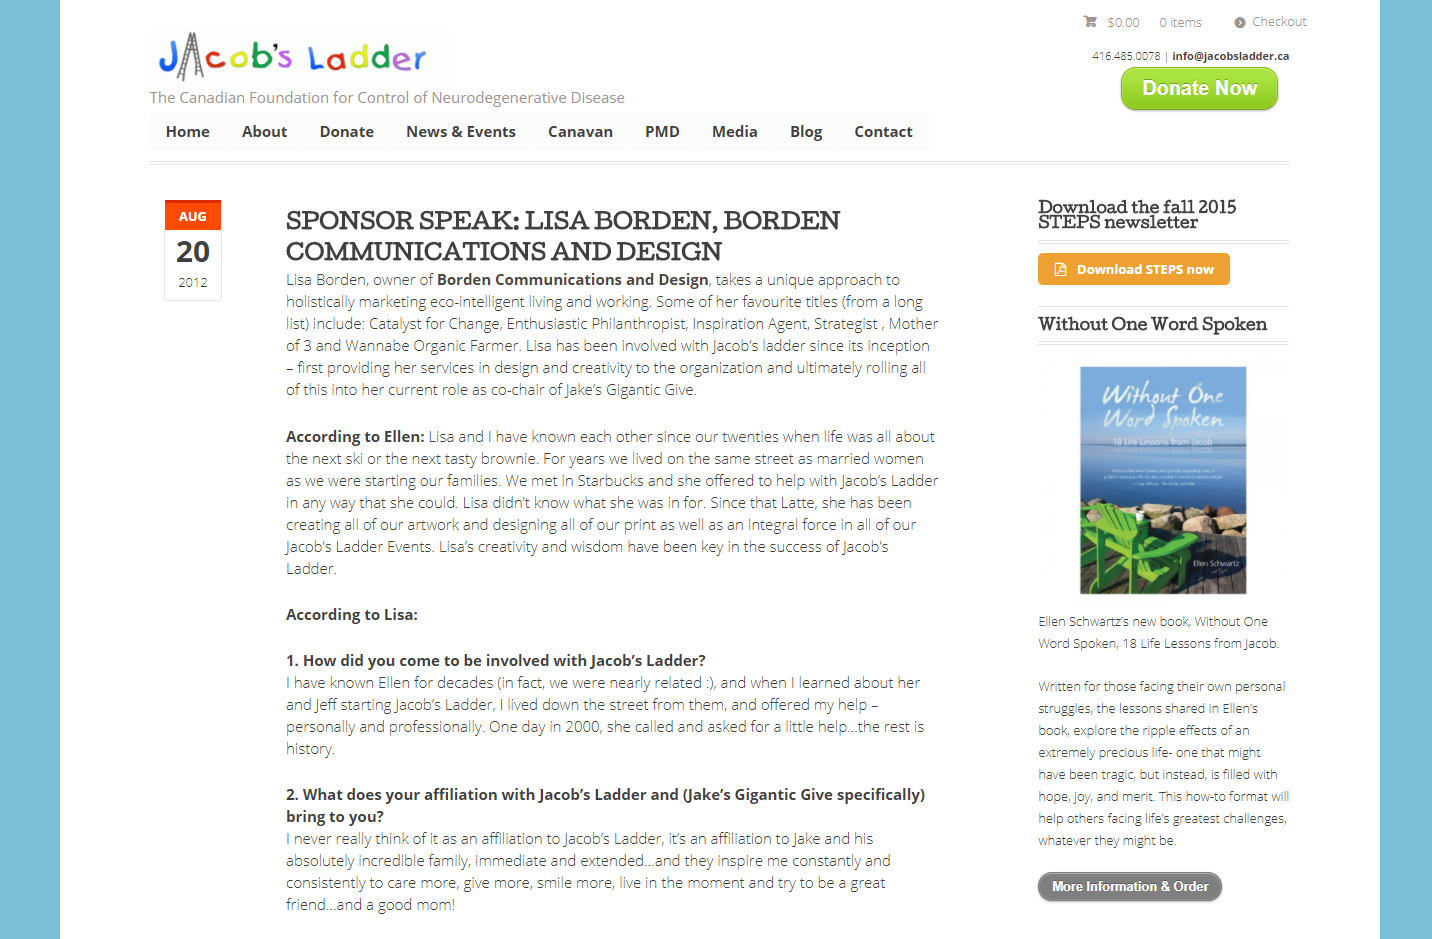 SPONSOR SPEAK: LISA BORDEN, Jacob's Ladder